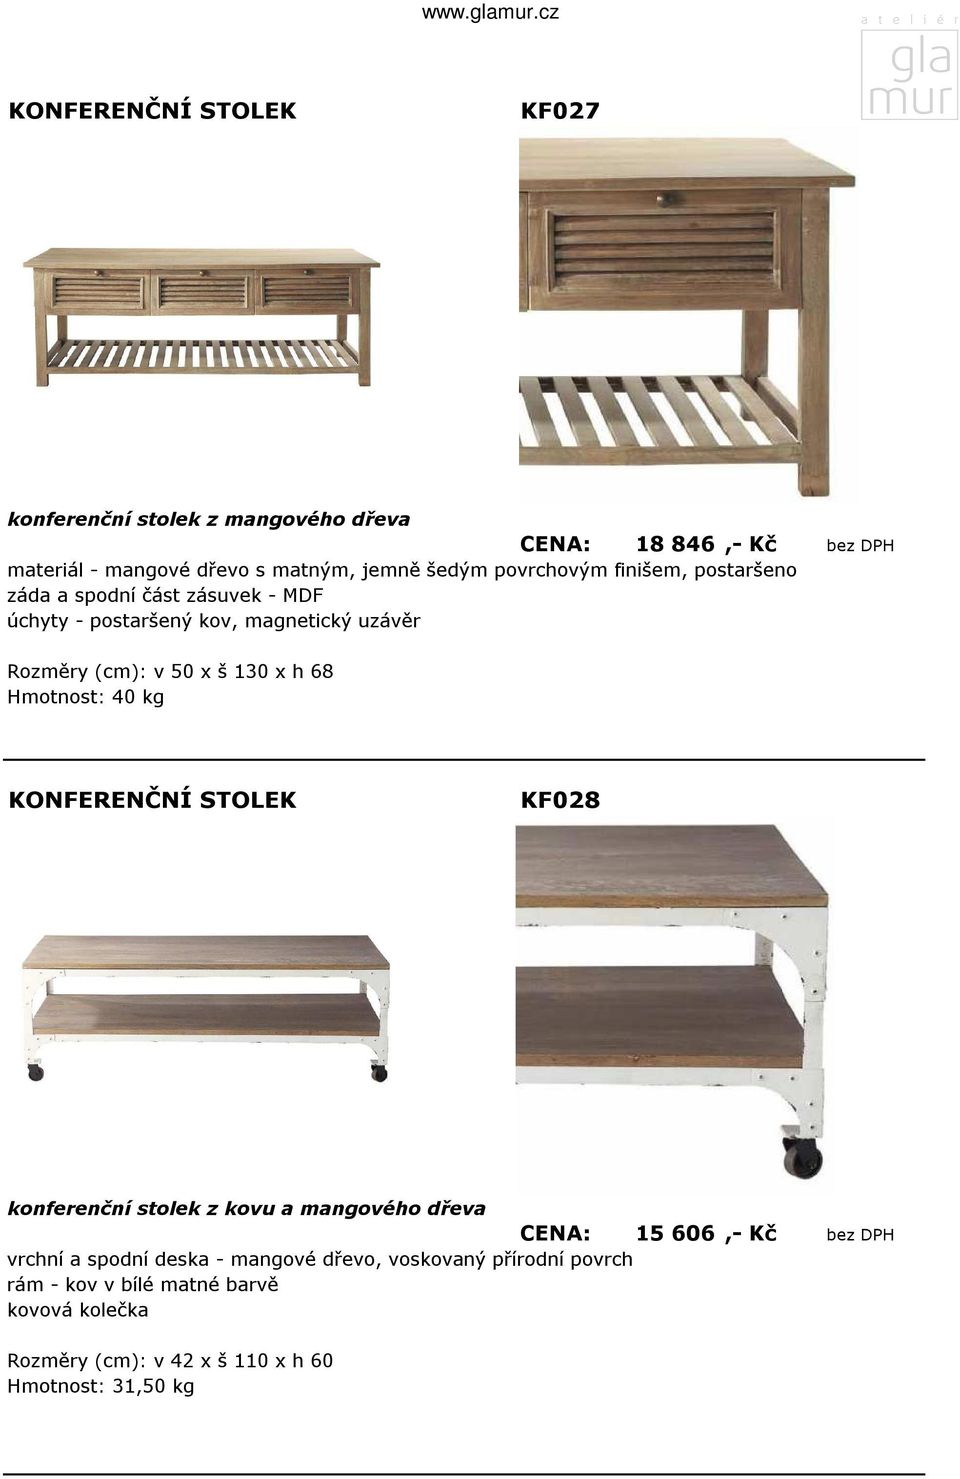 68 Hmotnost: 40 kg KF028 konferenční stolek z kovu a mangového dřeva CENA: 15 606,- Kč bez DPH vrchní a spodní deska - mangové